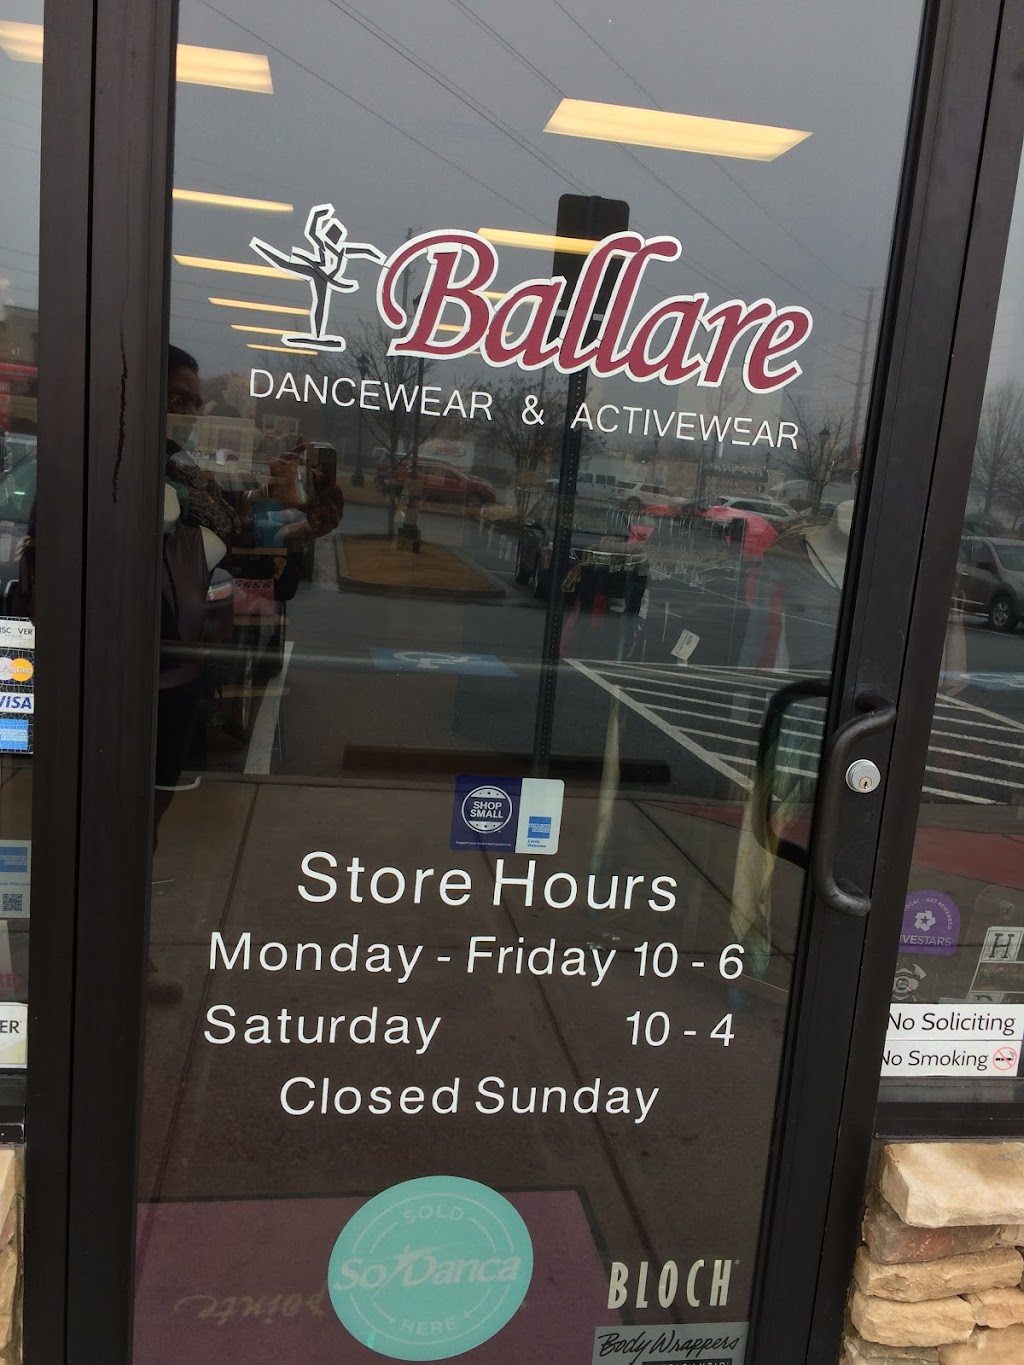 Ballare Dancewear & Active-wear Store | 3421 Ridge Rd B103, Buford, GA 30519, USA | Phone: (770) 831-3997